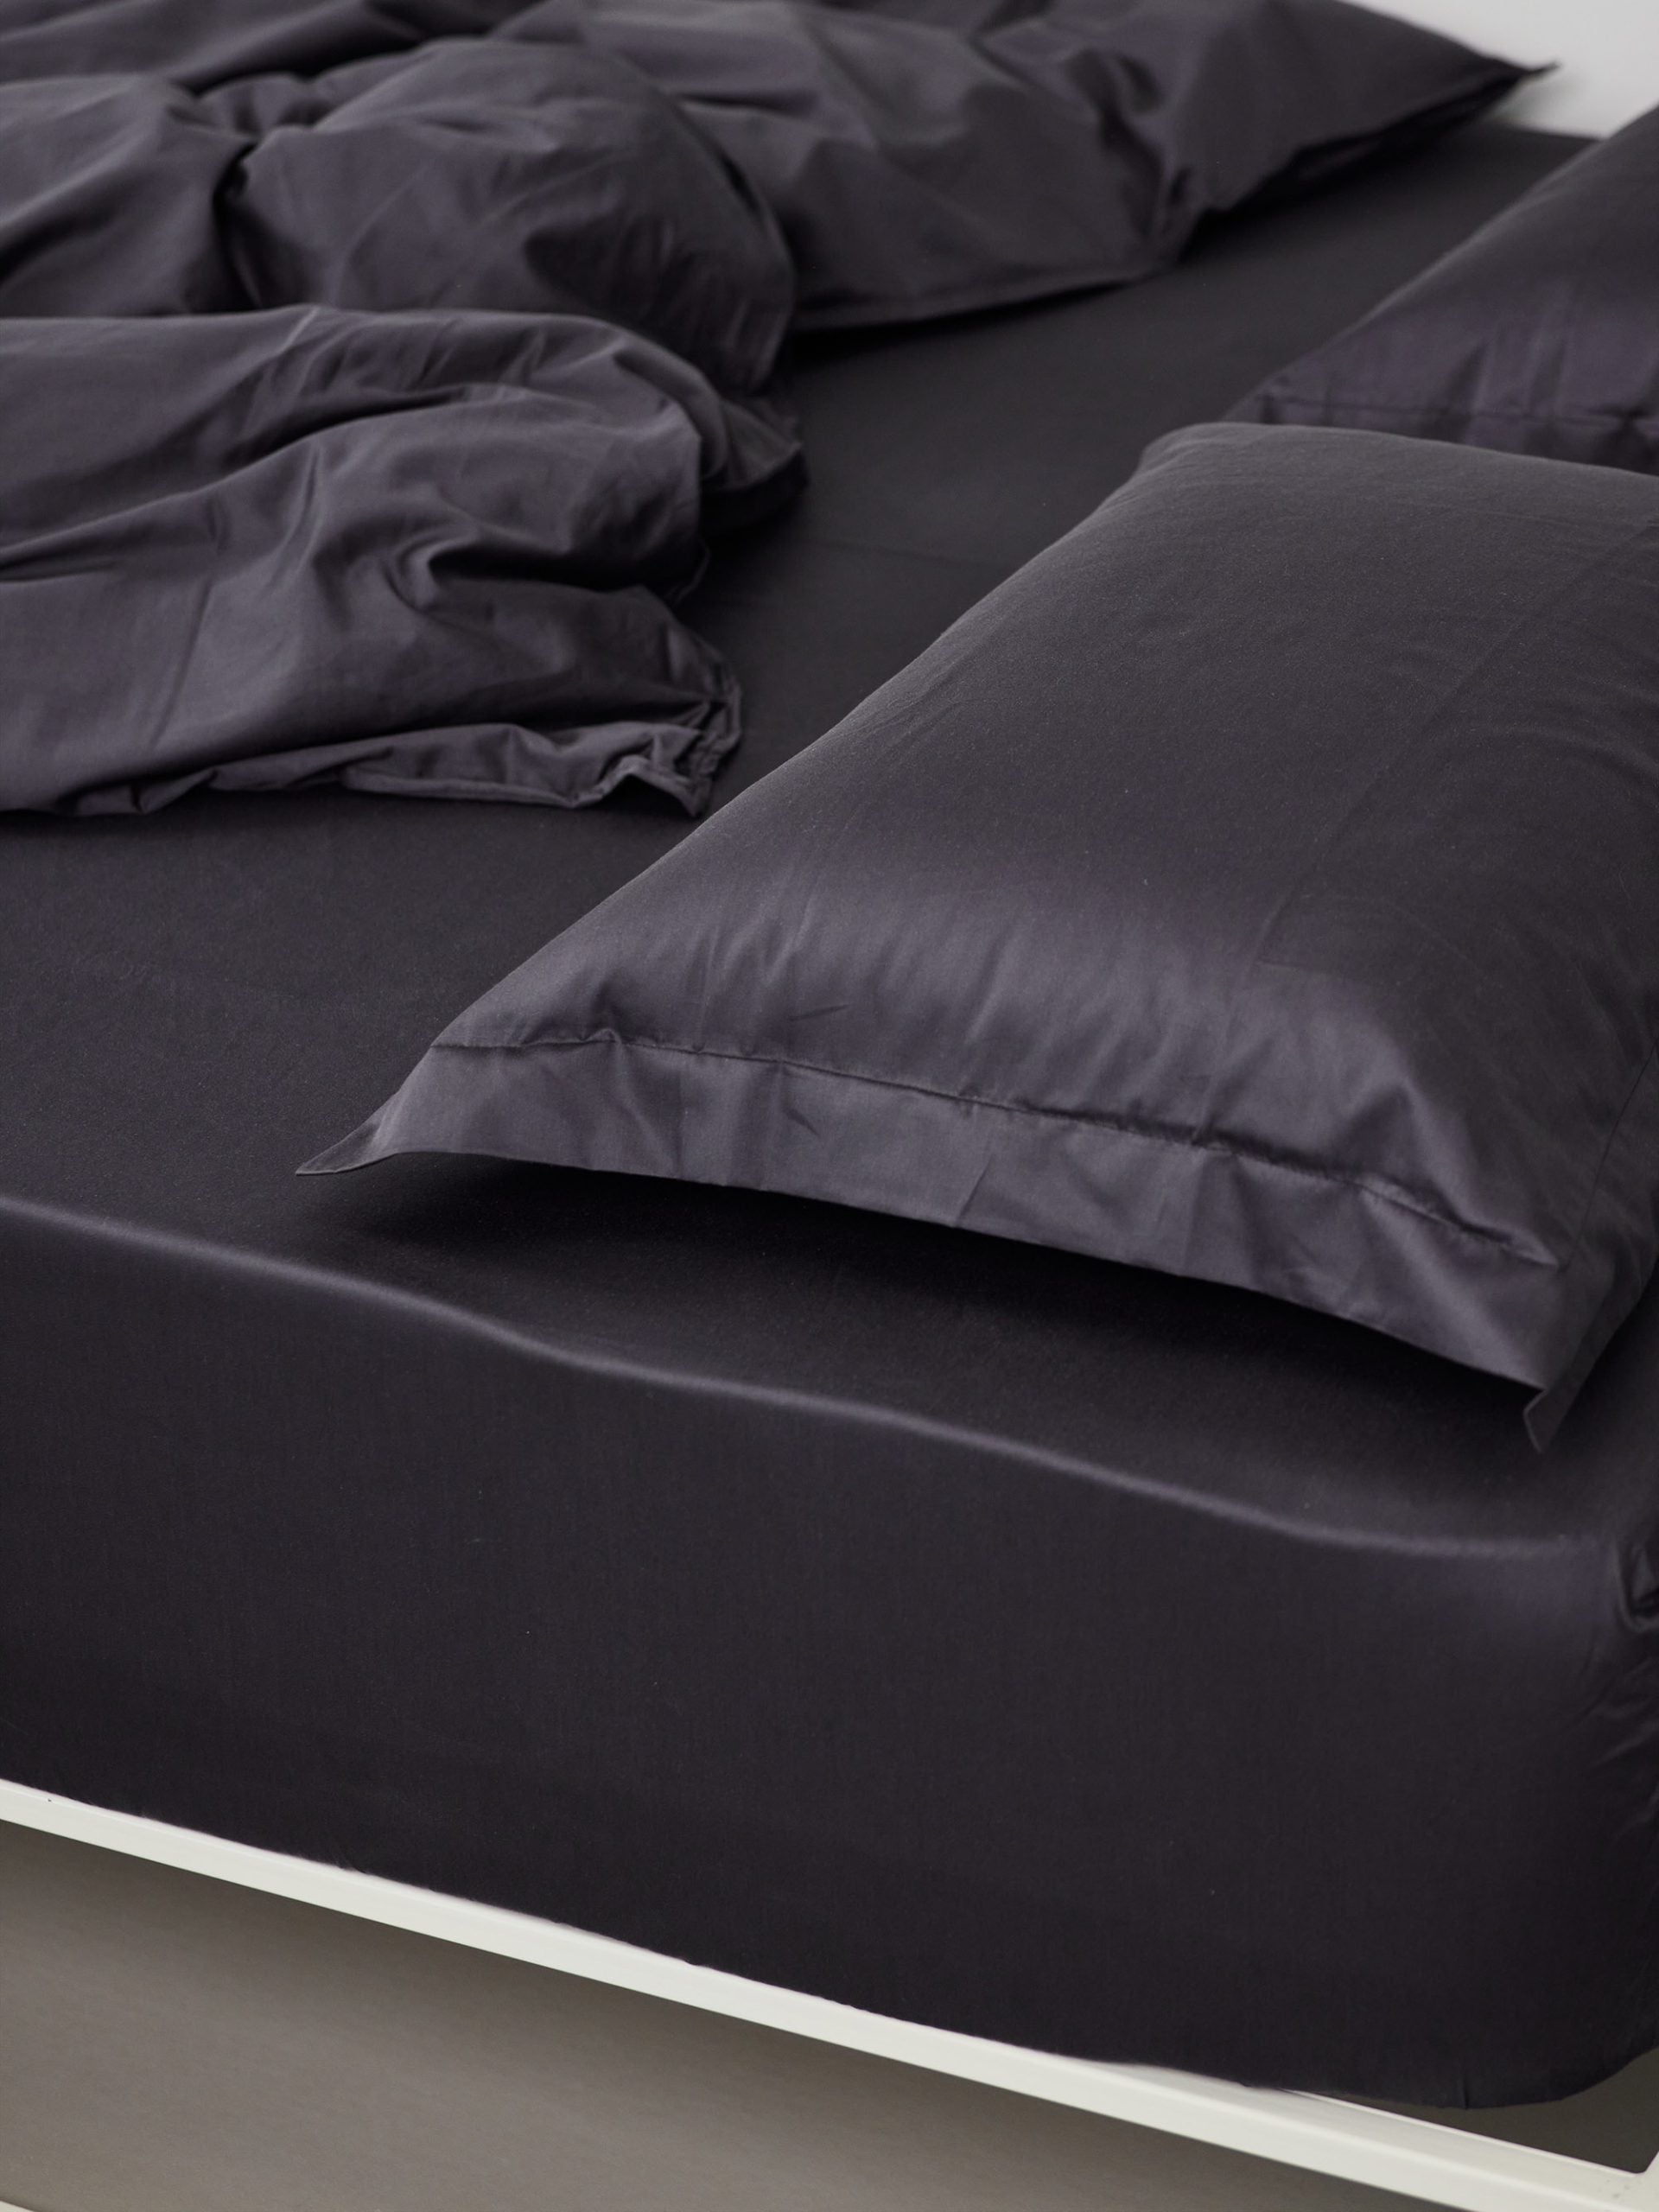 מיטת ברזל לבנה עם סדין, שמיכת פוך, כריות וציפיות לכריות בצבע פחם